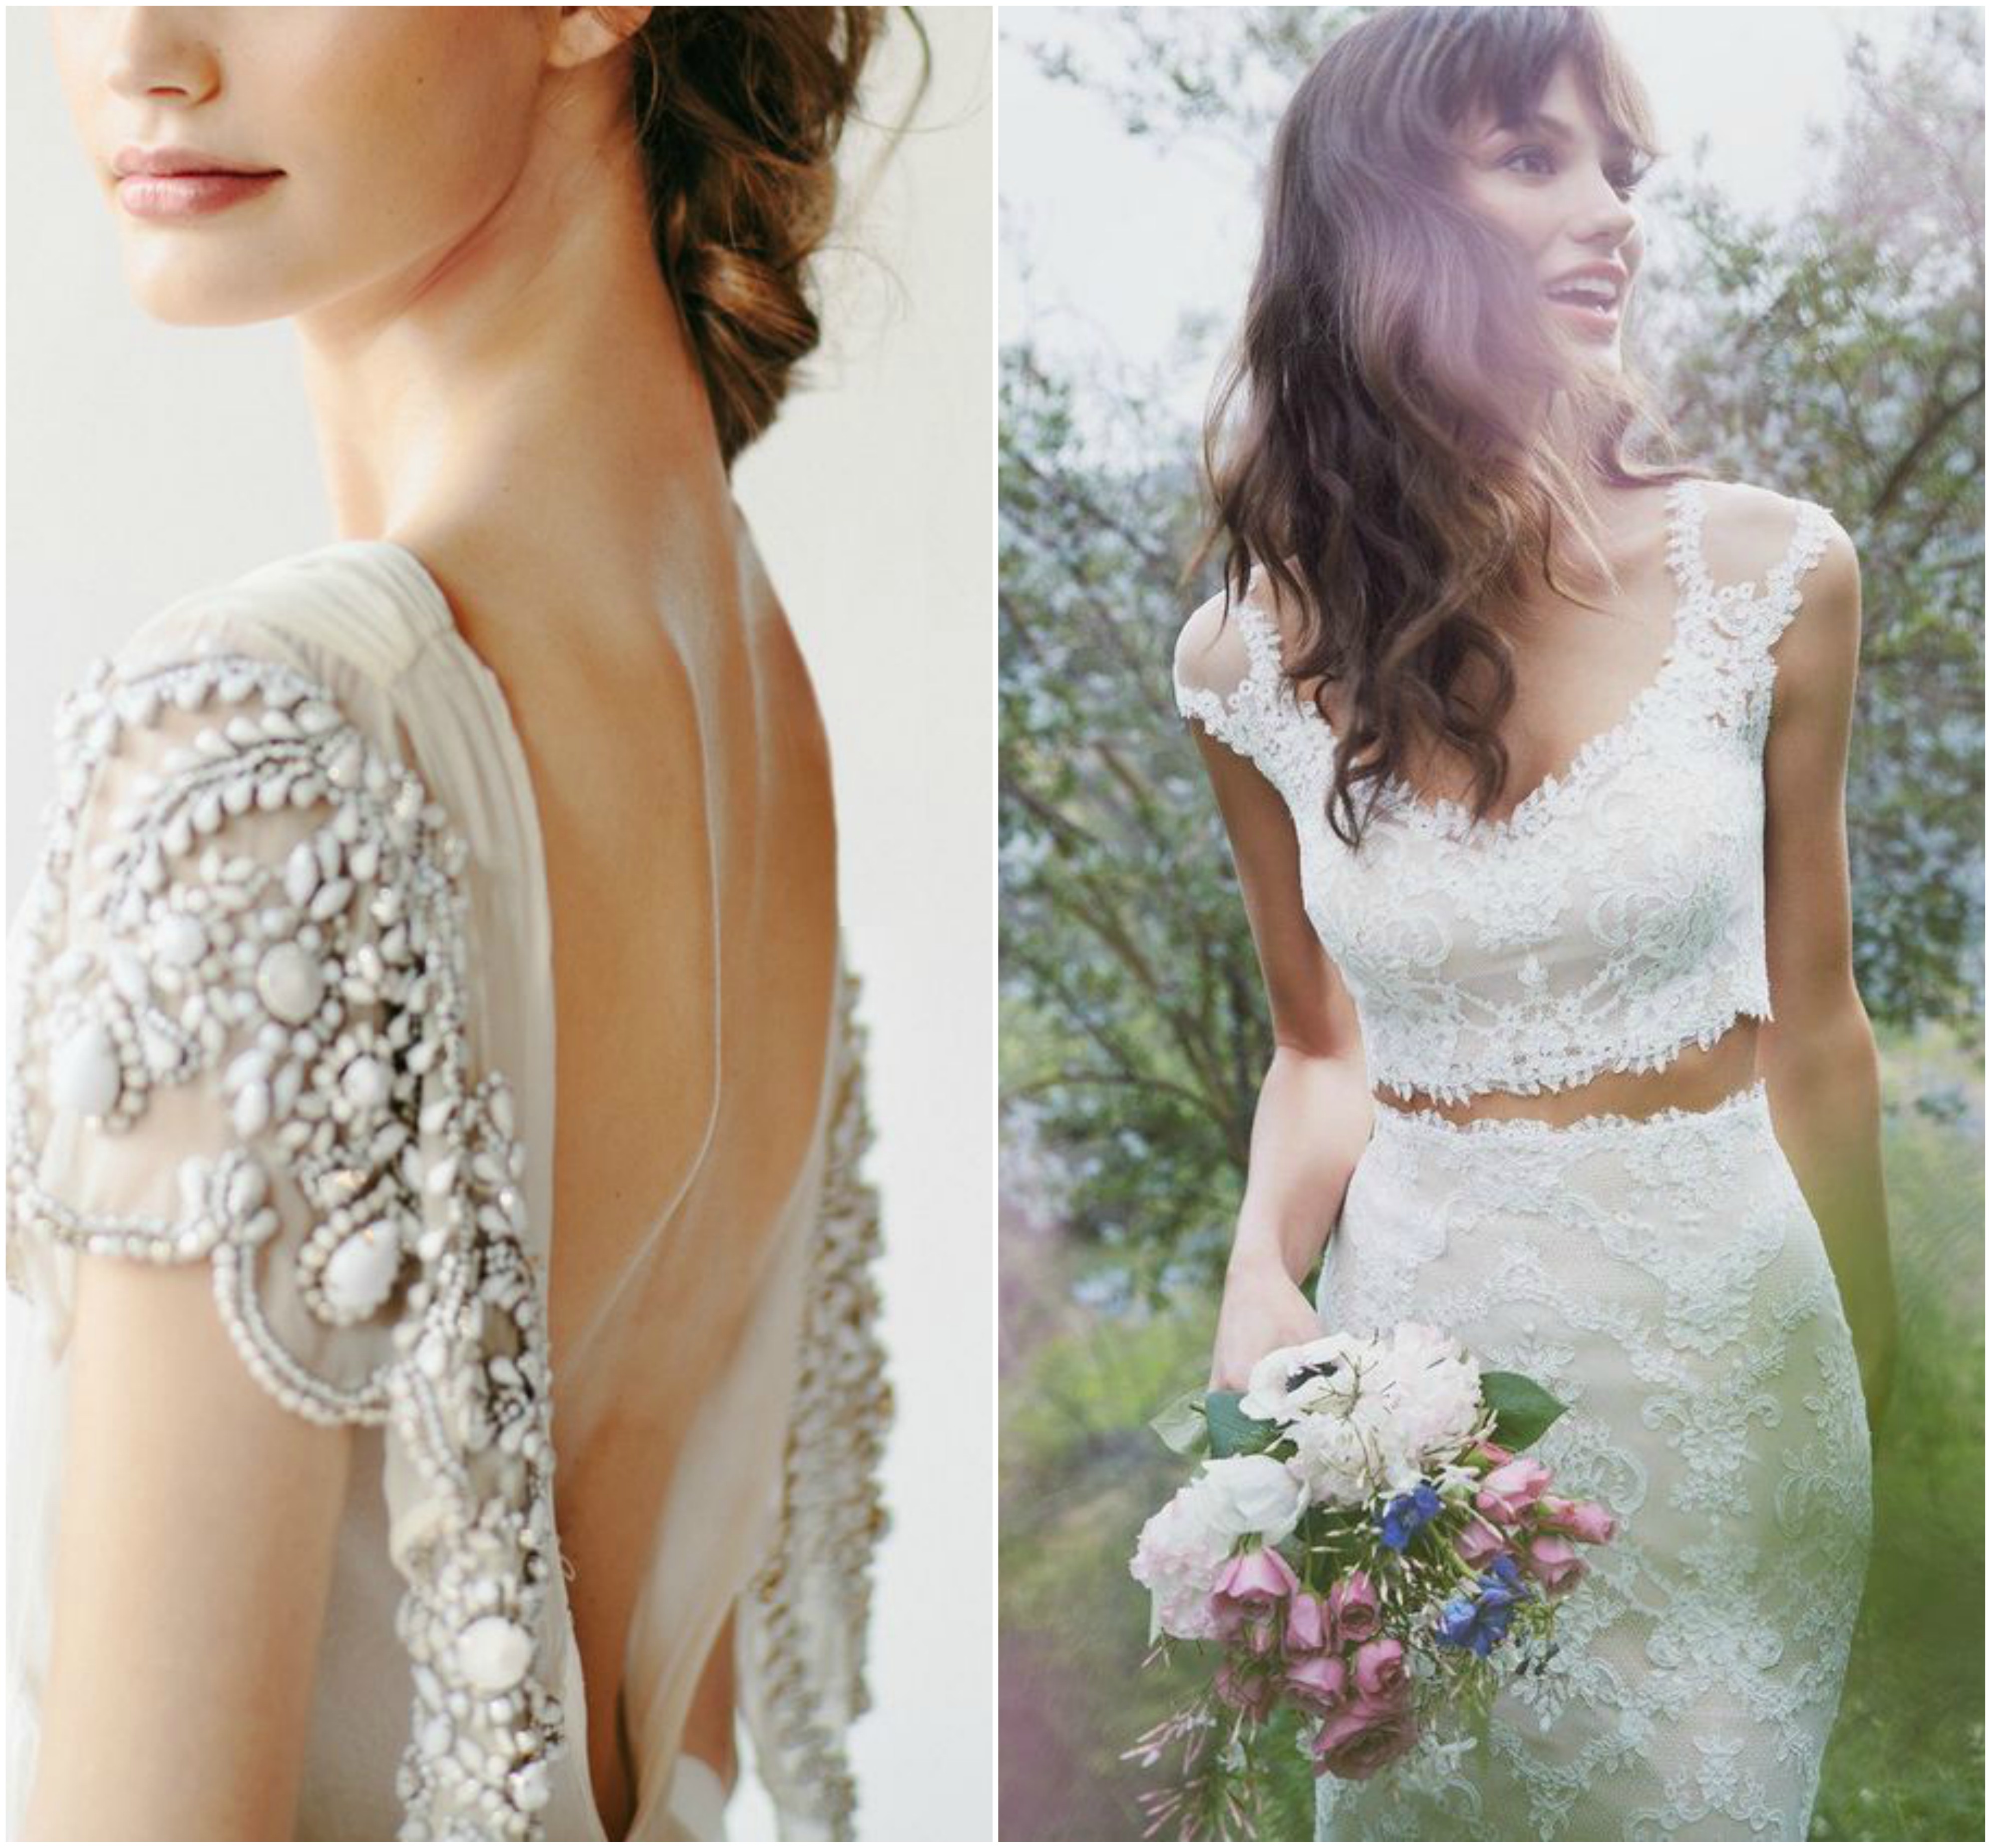 Tendencias de vestidos de boda que están arrasando esta primavera - Blog ideas inspiración para bodas - Comotinta